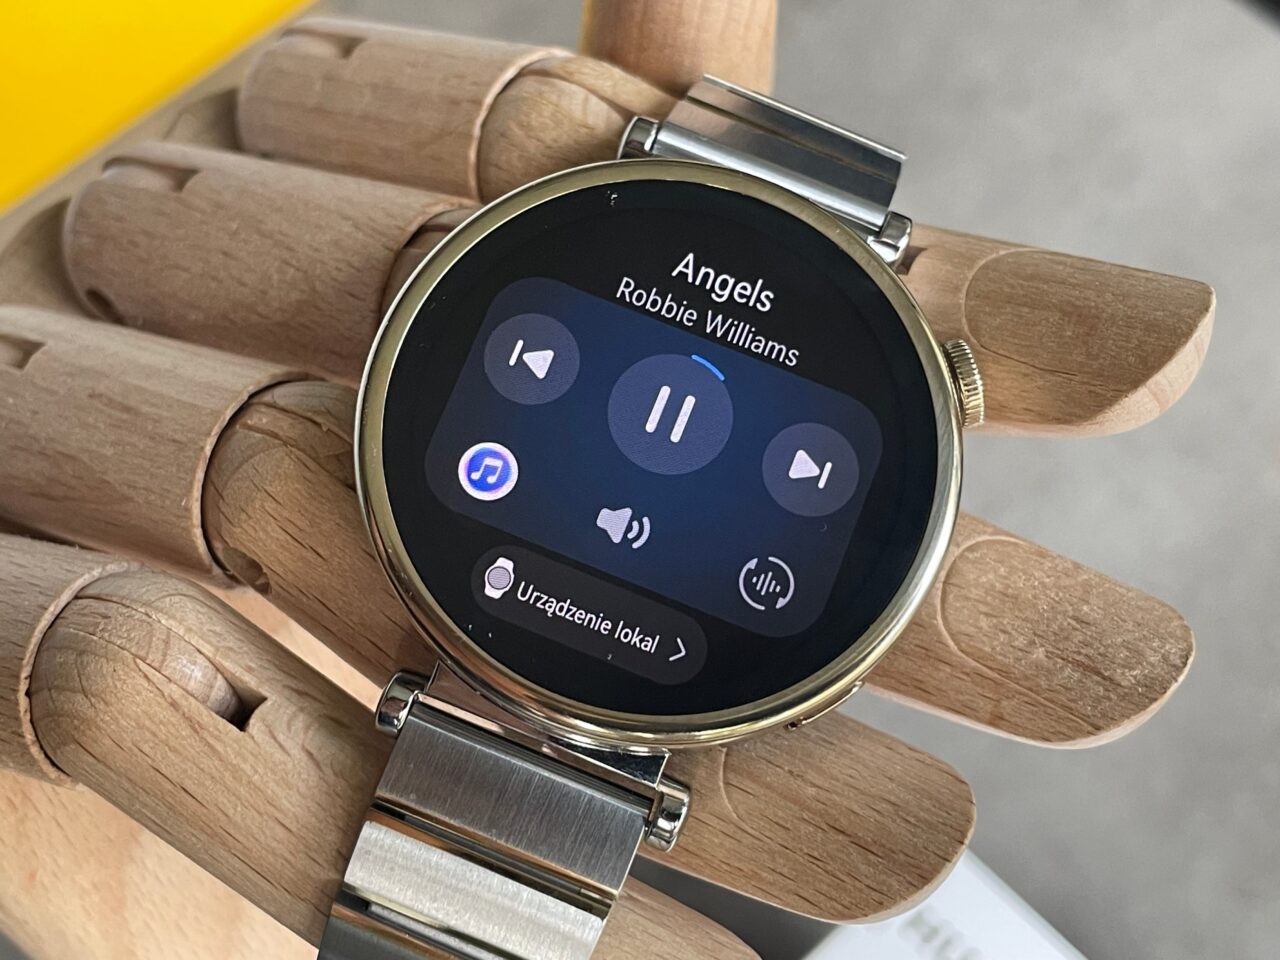 android, recenzja huawei watch gt 4. modny gadżet, czy wręcz smartwatch idealny?